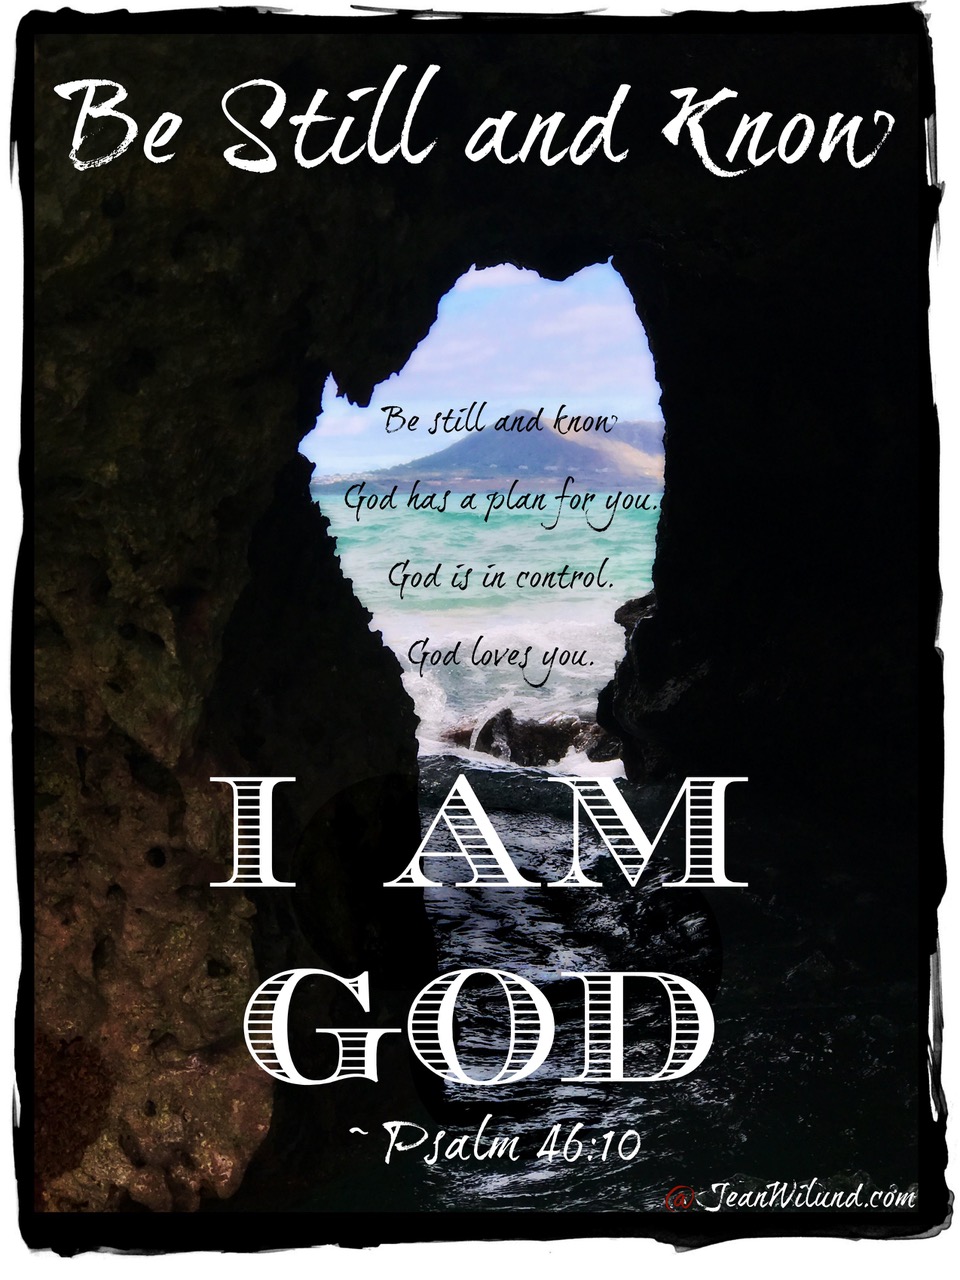 Be still and know I am God - Psalm 46:10 via www.JeanWilund.com